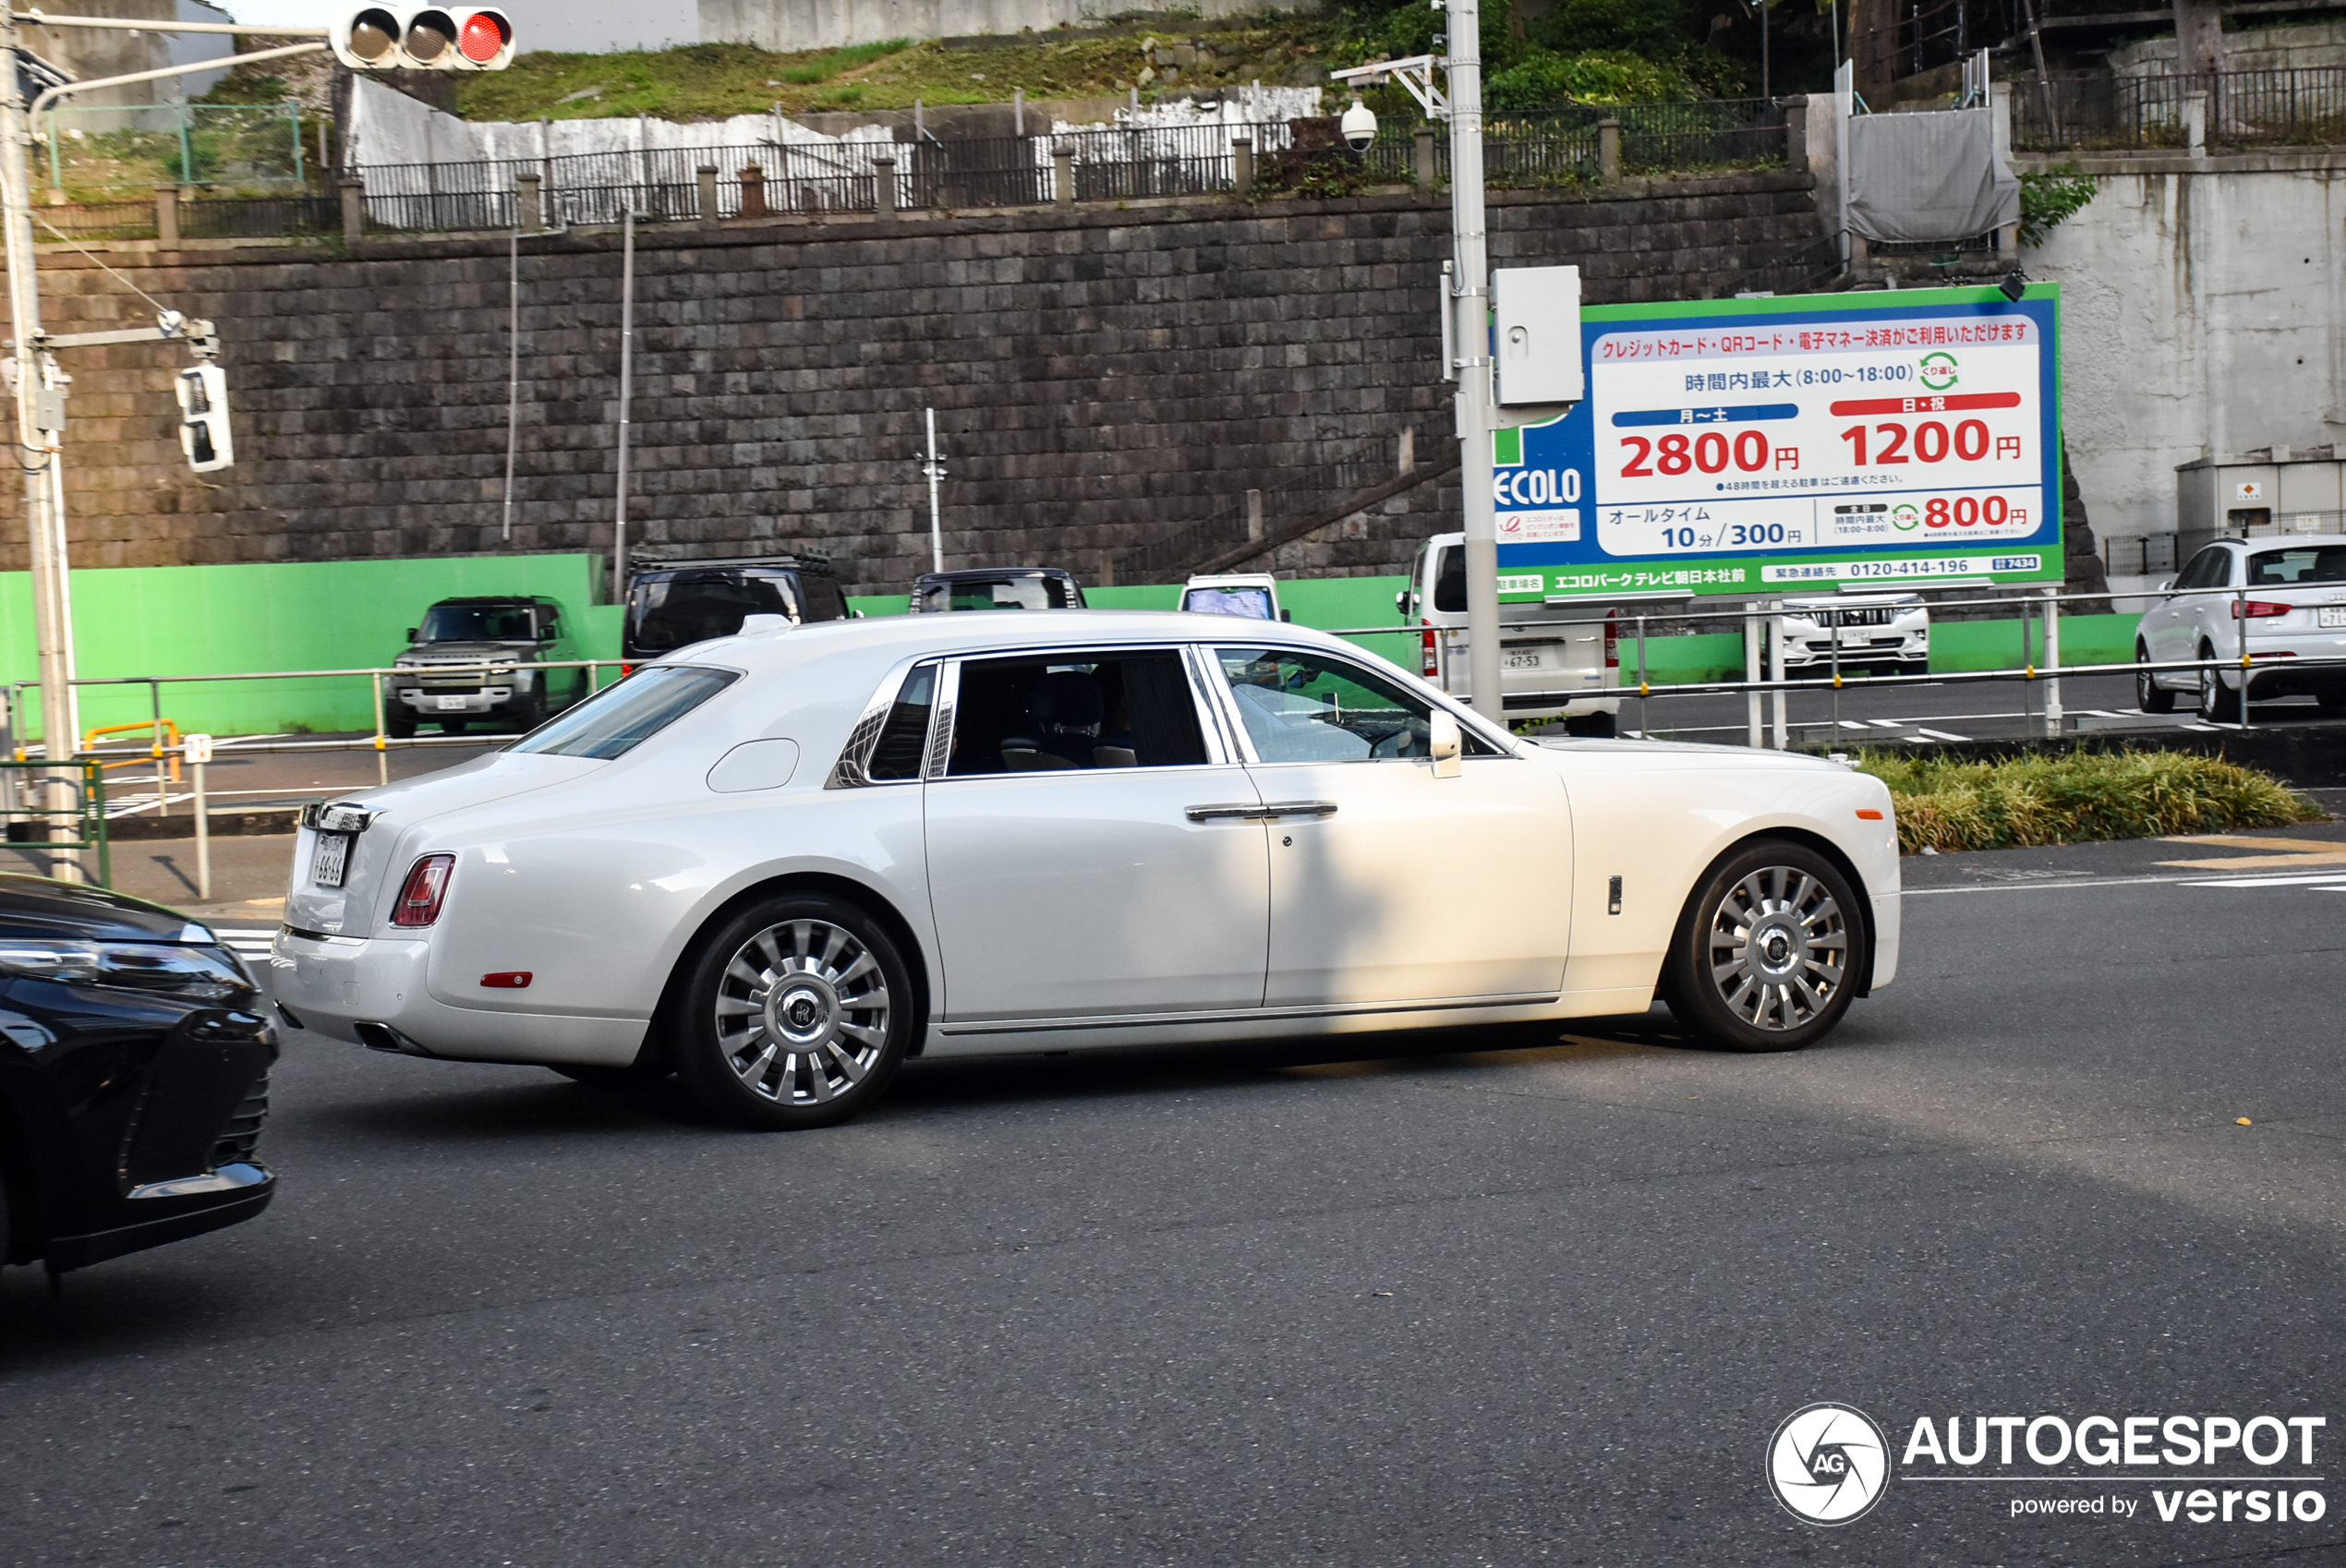 Sjajni beli Rolls-Royce Phantom ostavlja utisak